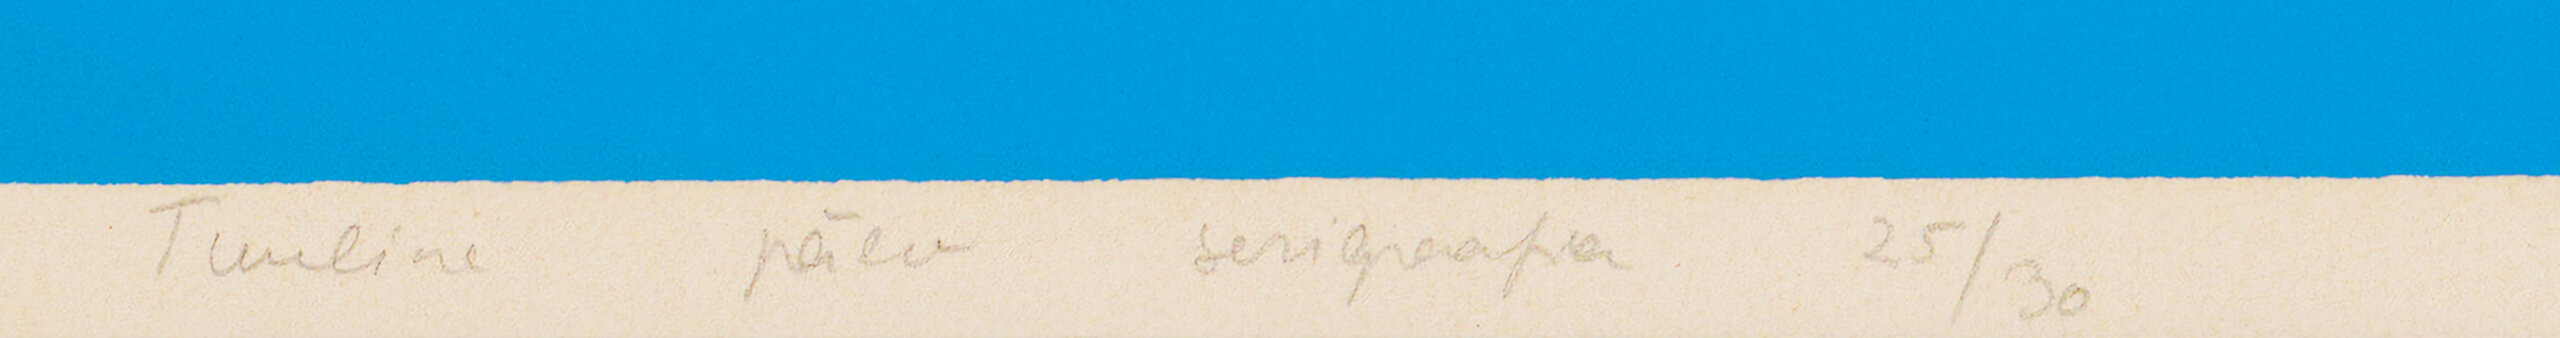 Malle Leis “Tuuline päev”, 1973. Plm 60 x 60 cm.